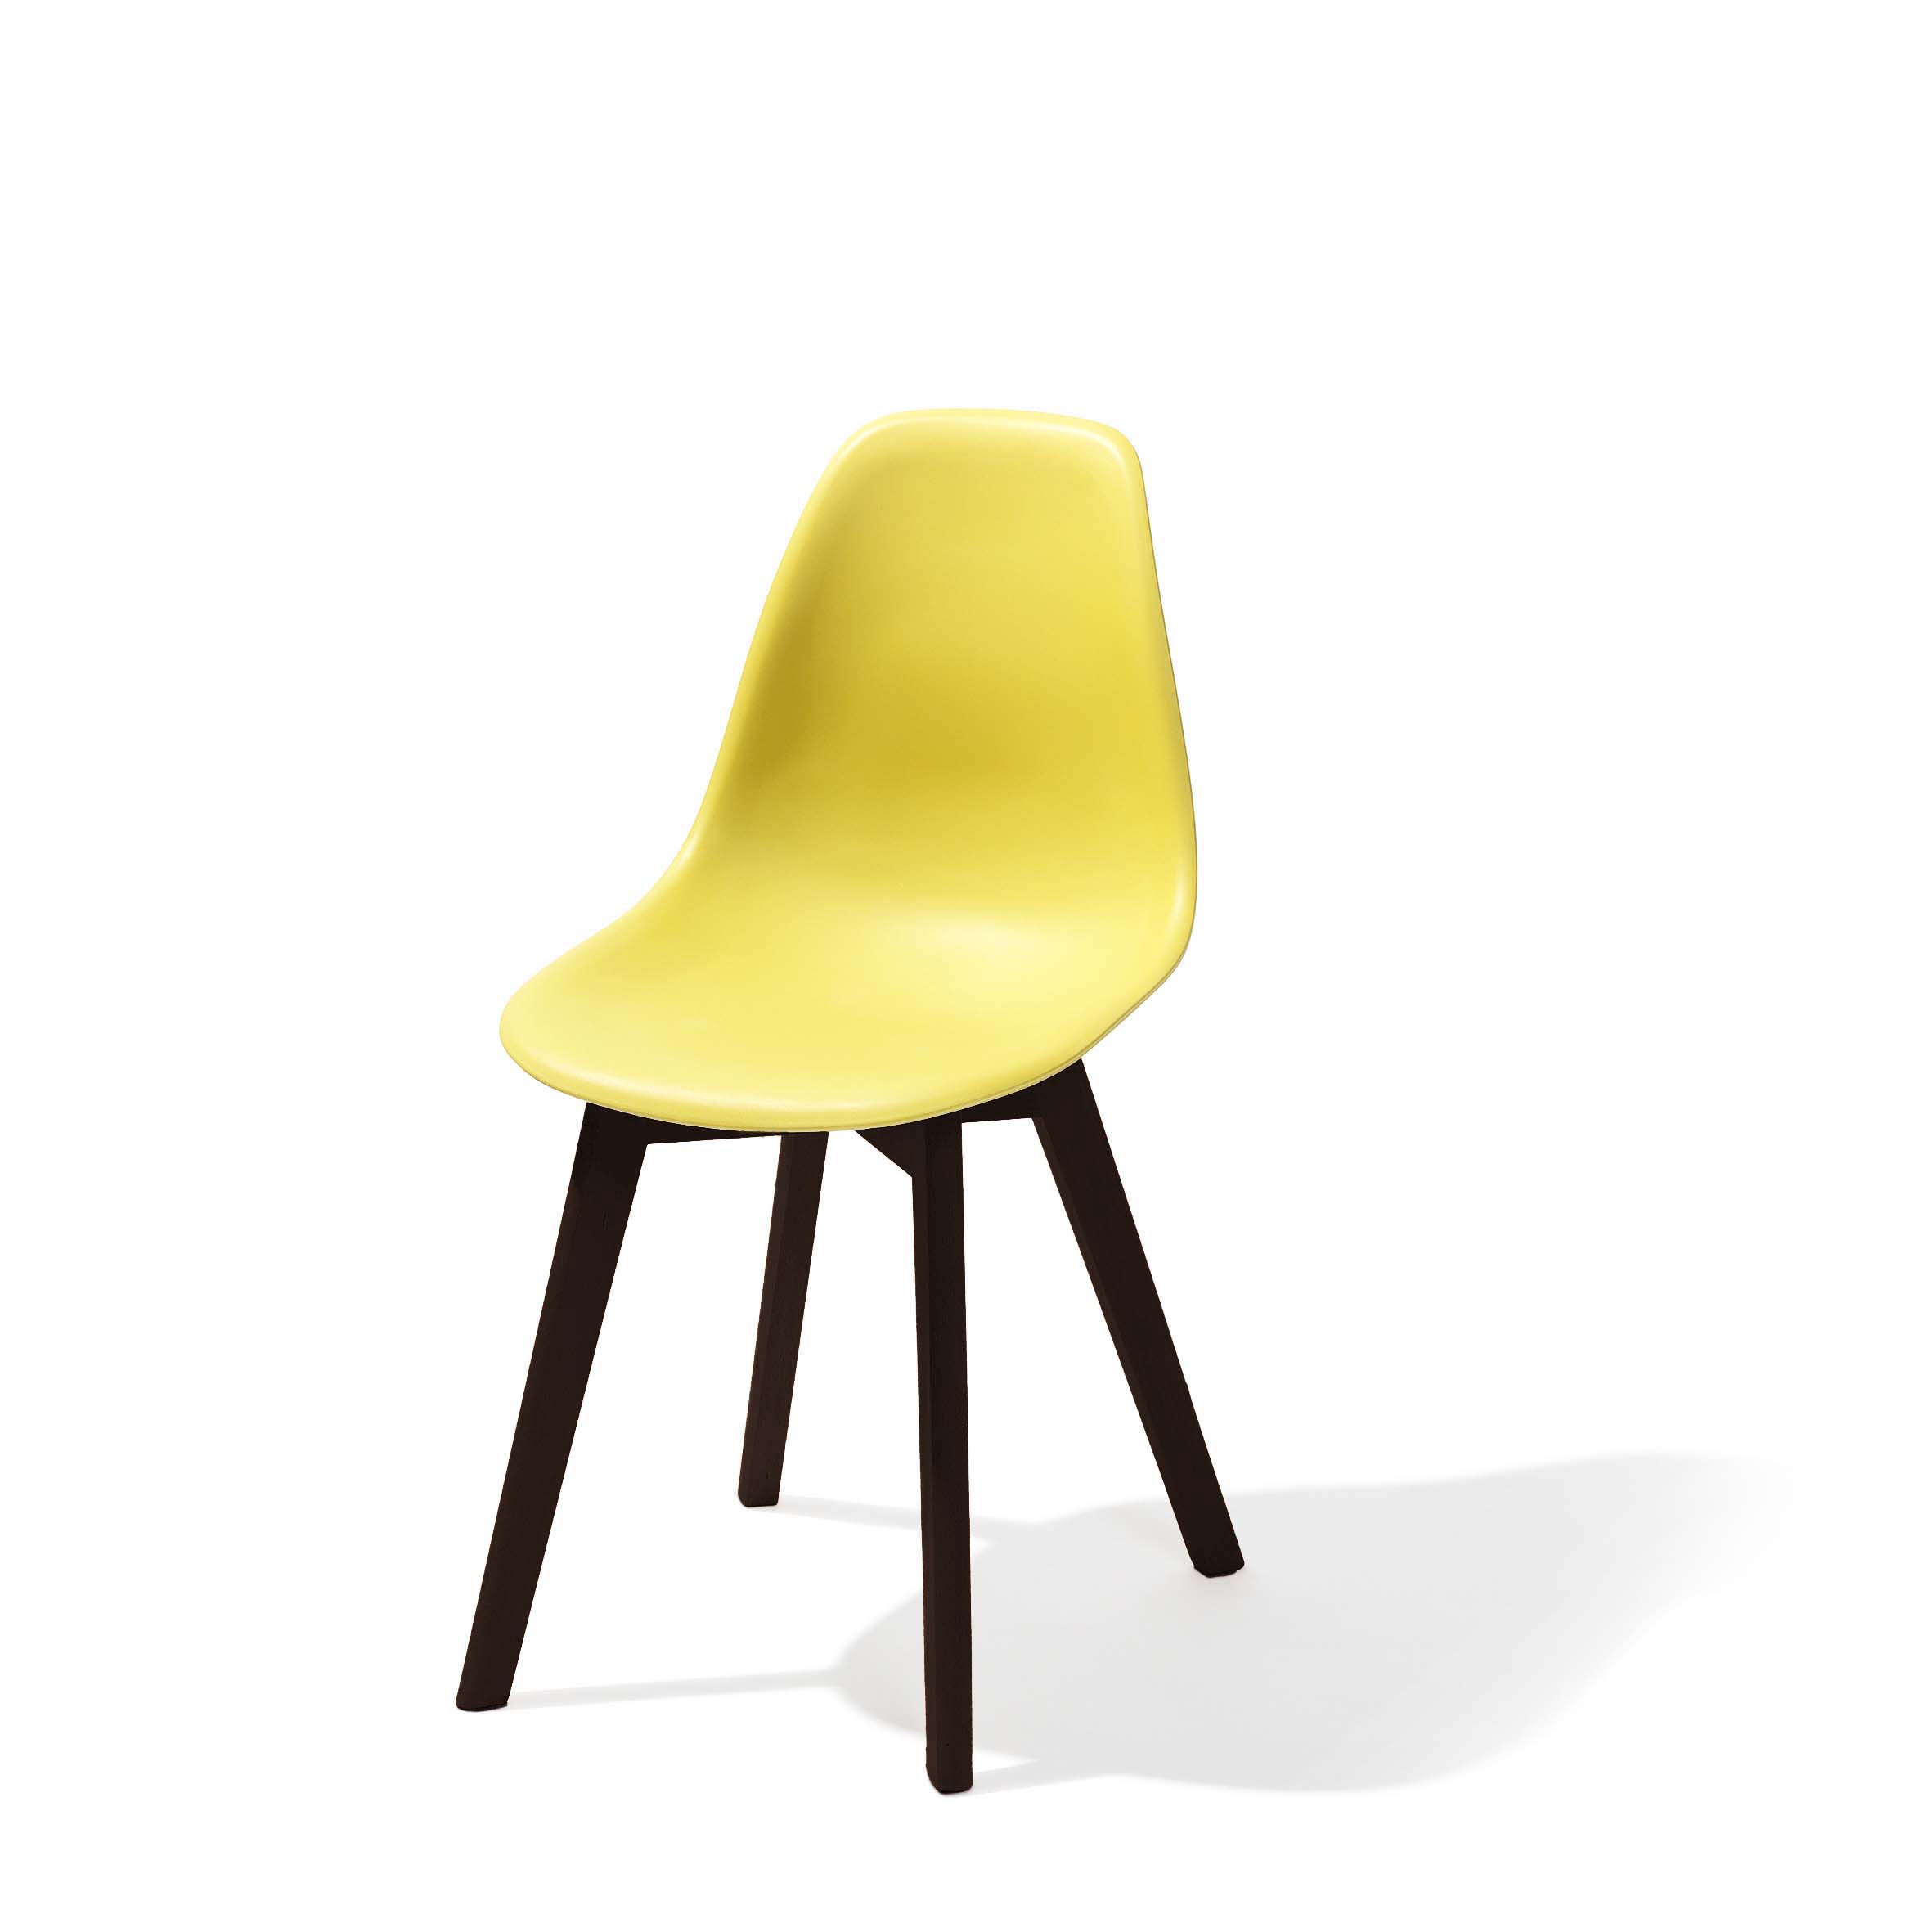 Keeve Stapelstuhl gelb ohne armlehne, dunkeln birkenholz gestell und kunststoff sitzfläche, 47x53x83